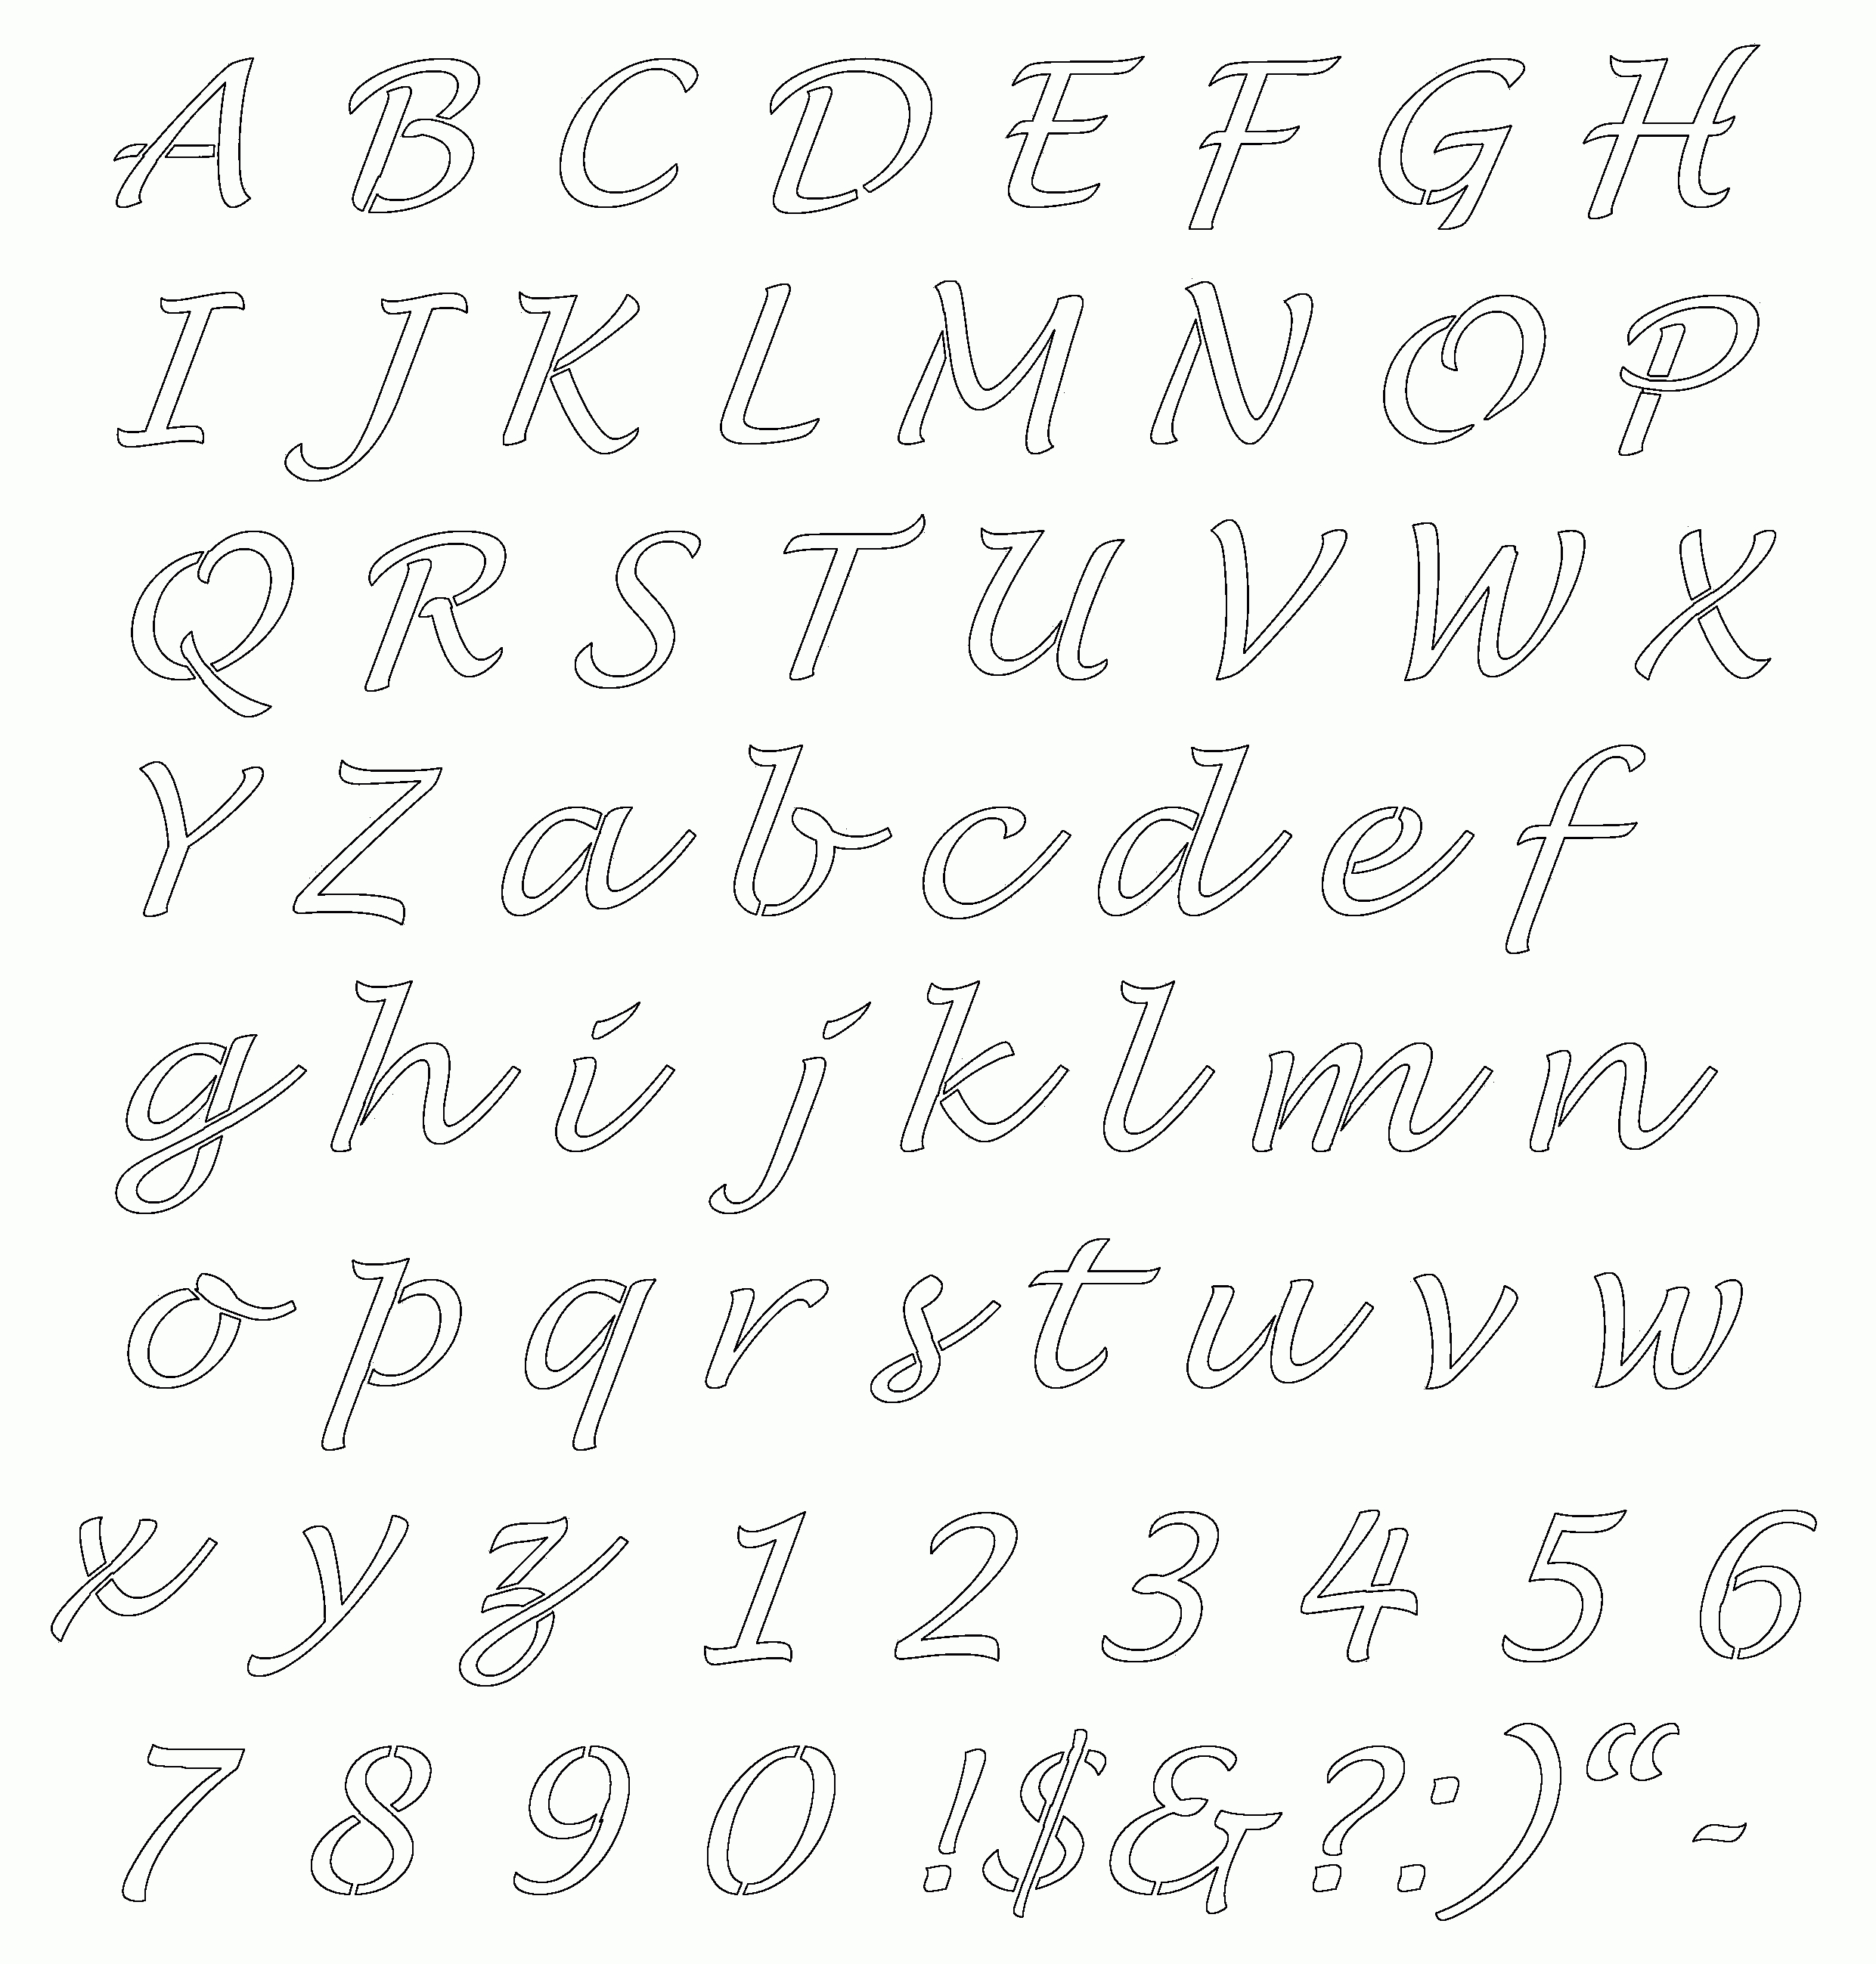 Free Online Alphabet Templates | Stencils Free Printable Alphabetaug - Free Printable Calligraphy Letter Stencils